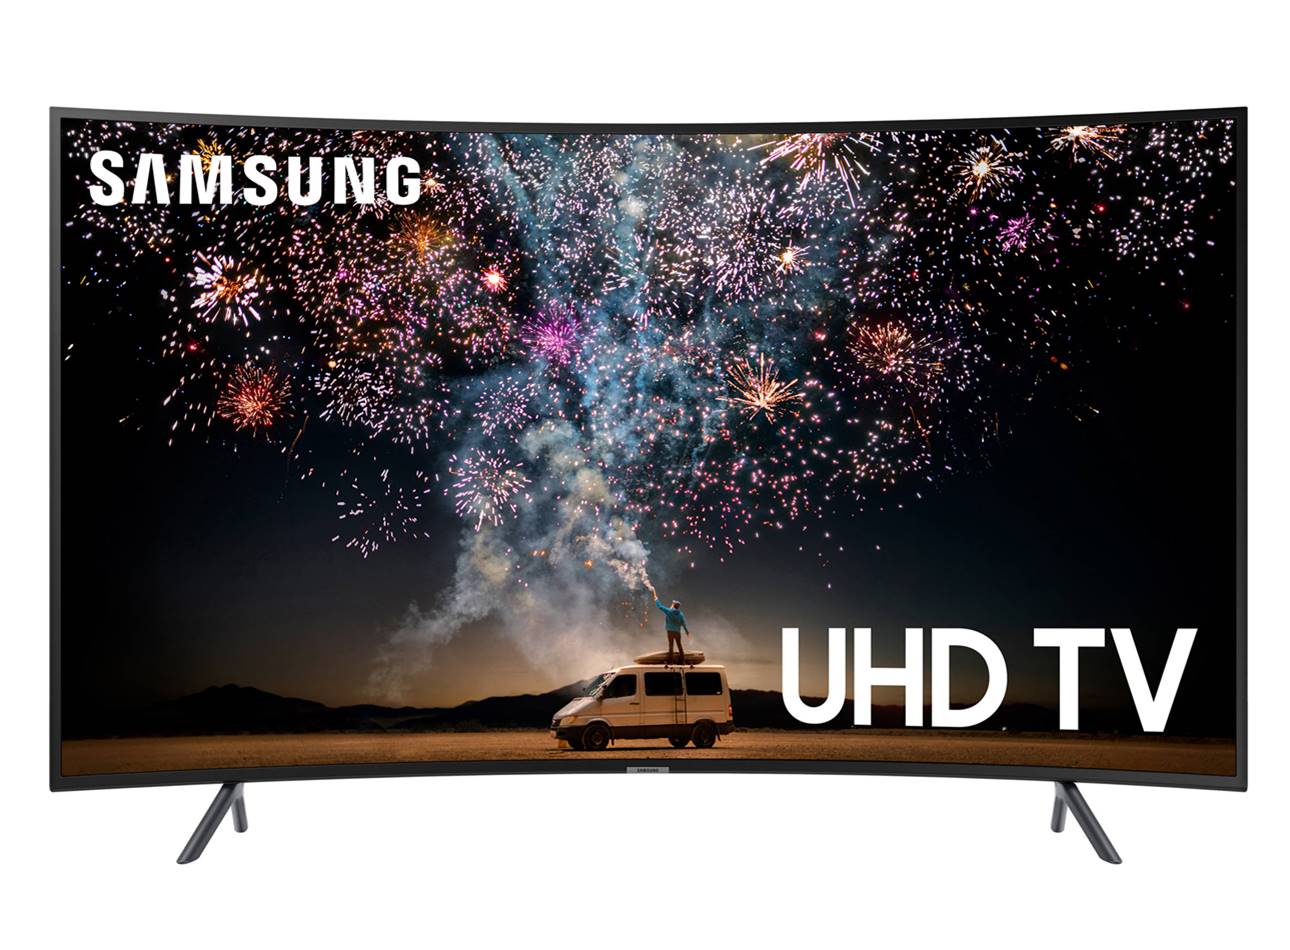 Samsung UN55RU7300FXZA 55” Curved TV